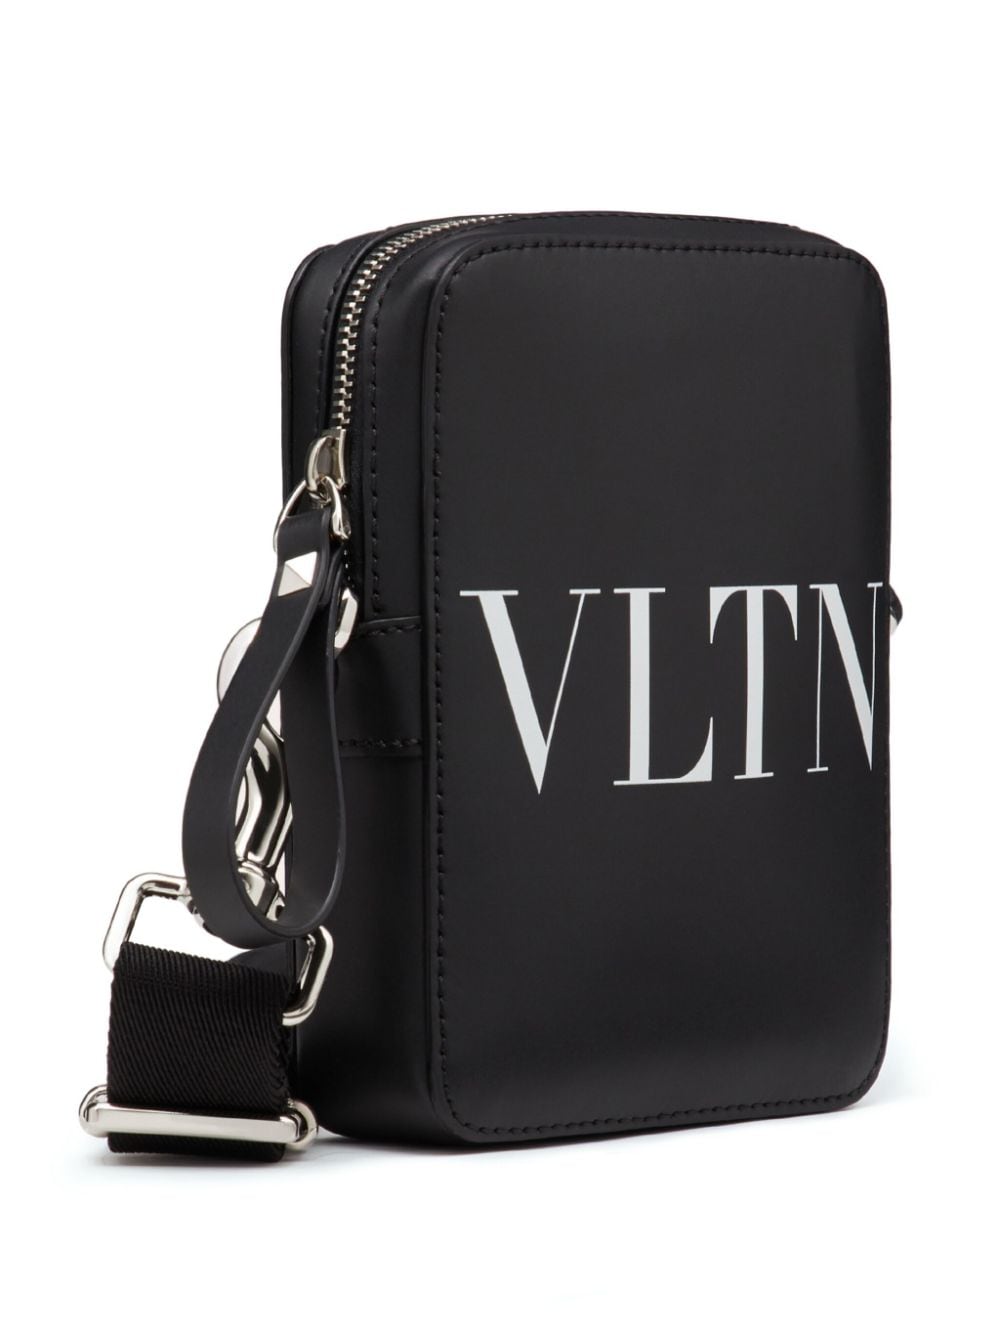 Small VLTN messenger bag<BR/><BR/><BR/>